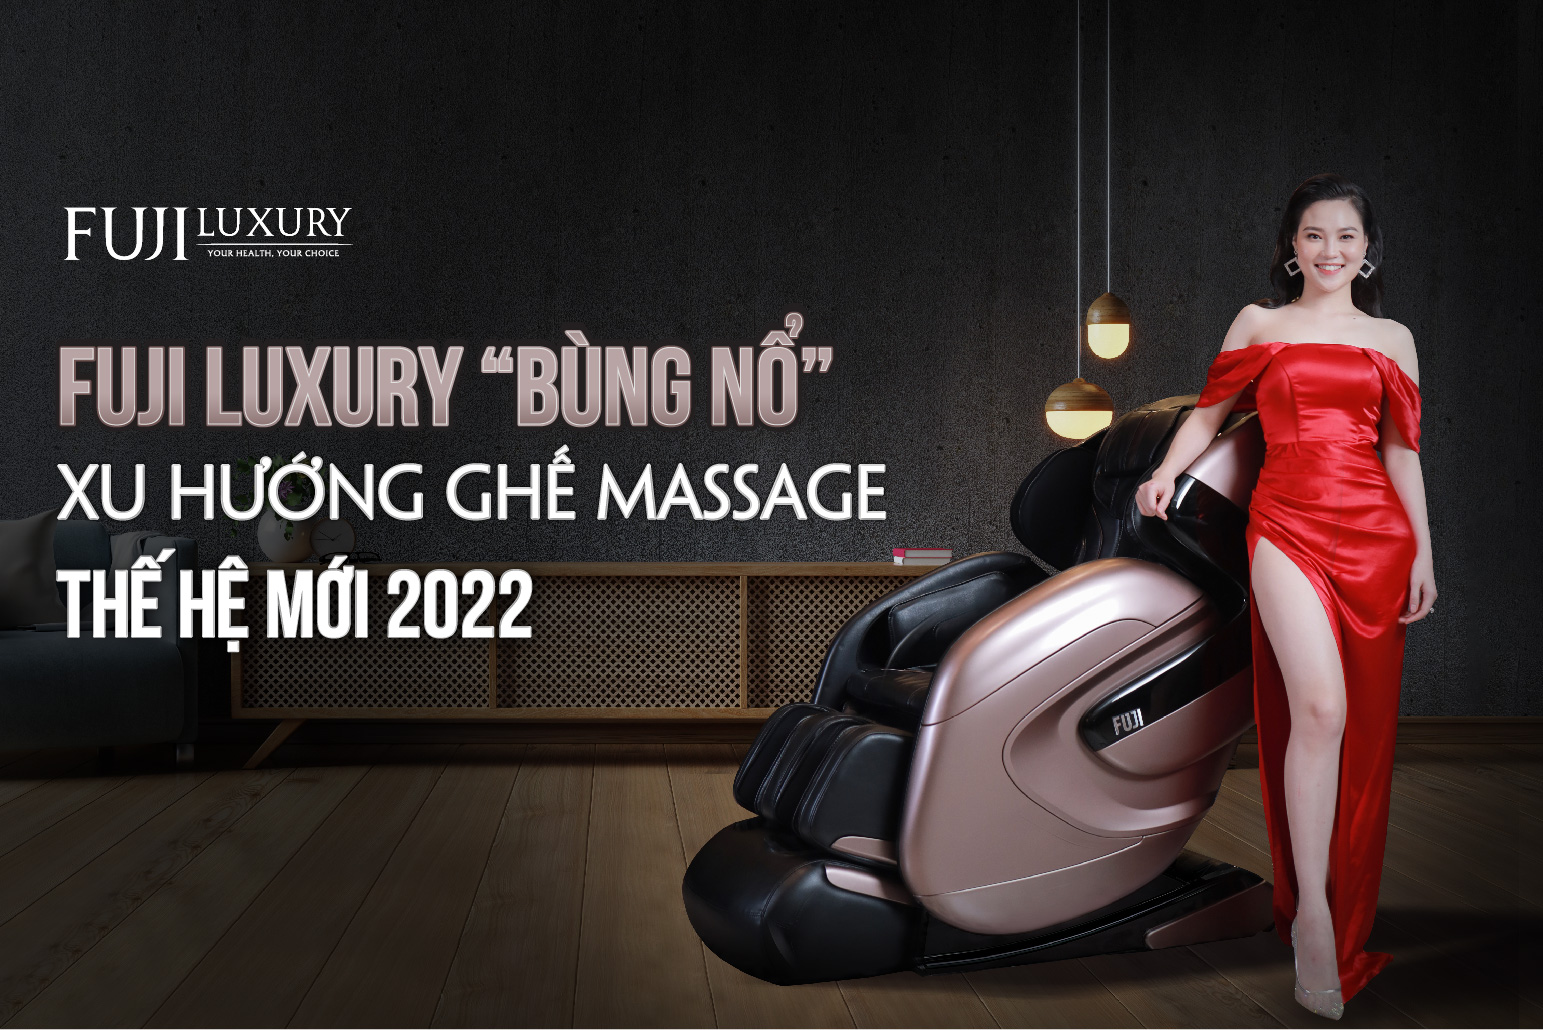 Fuji Luxury “Bùng Nổ” Xu Hướng Ghế Massage Thế Hệ Mới 2022